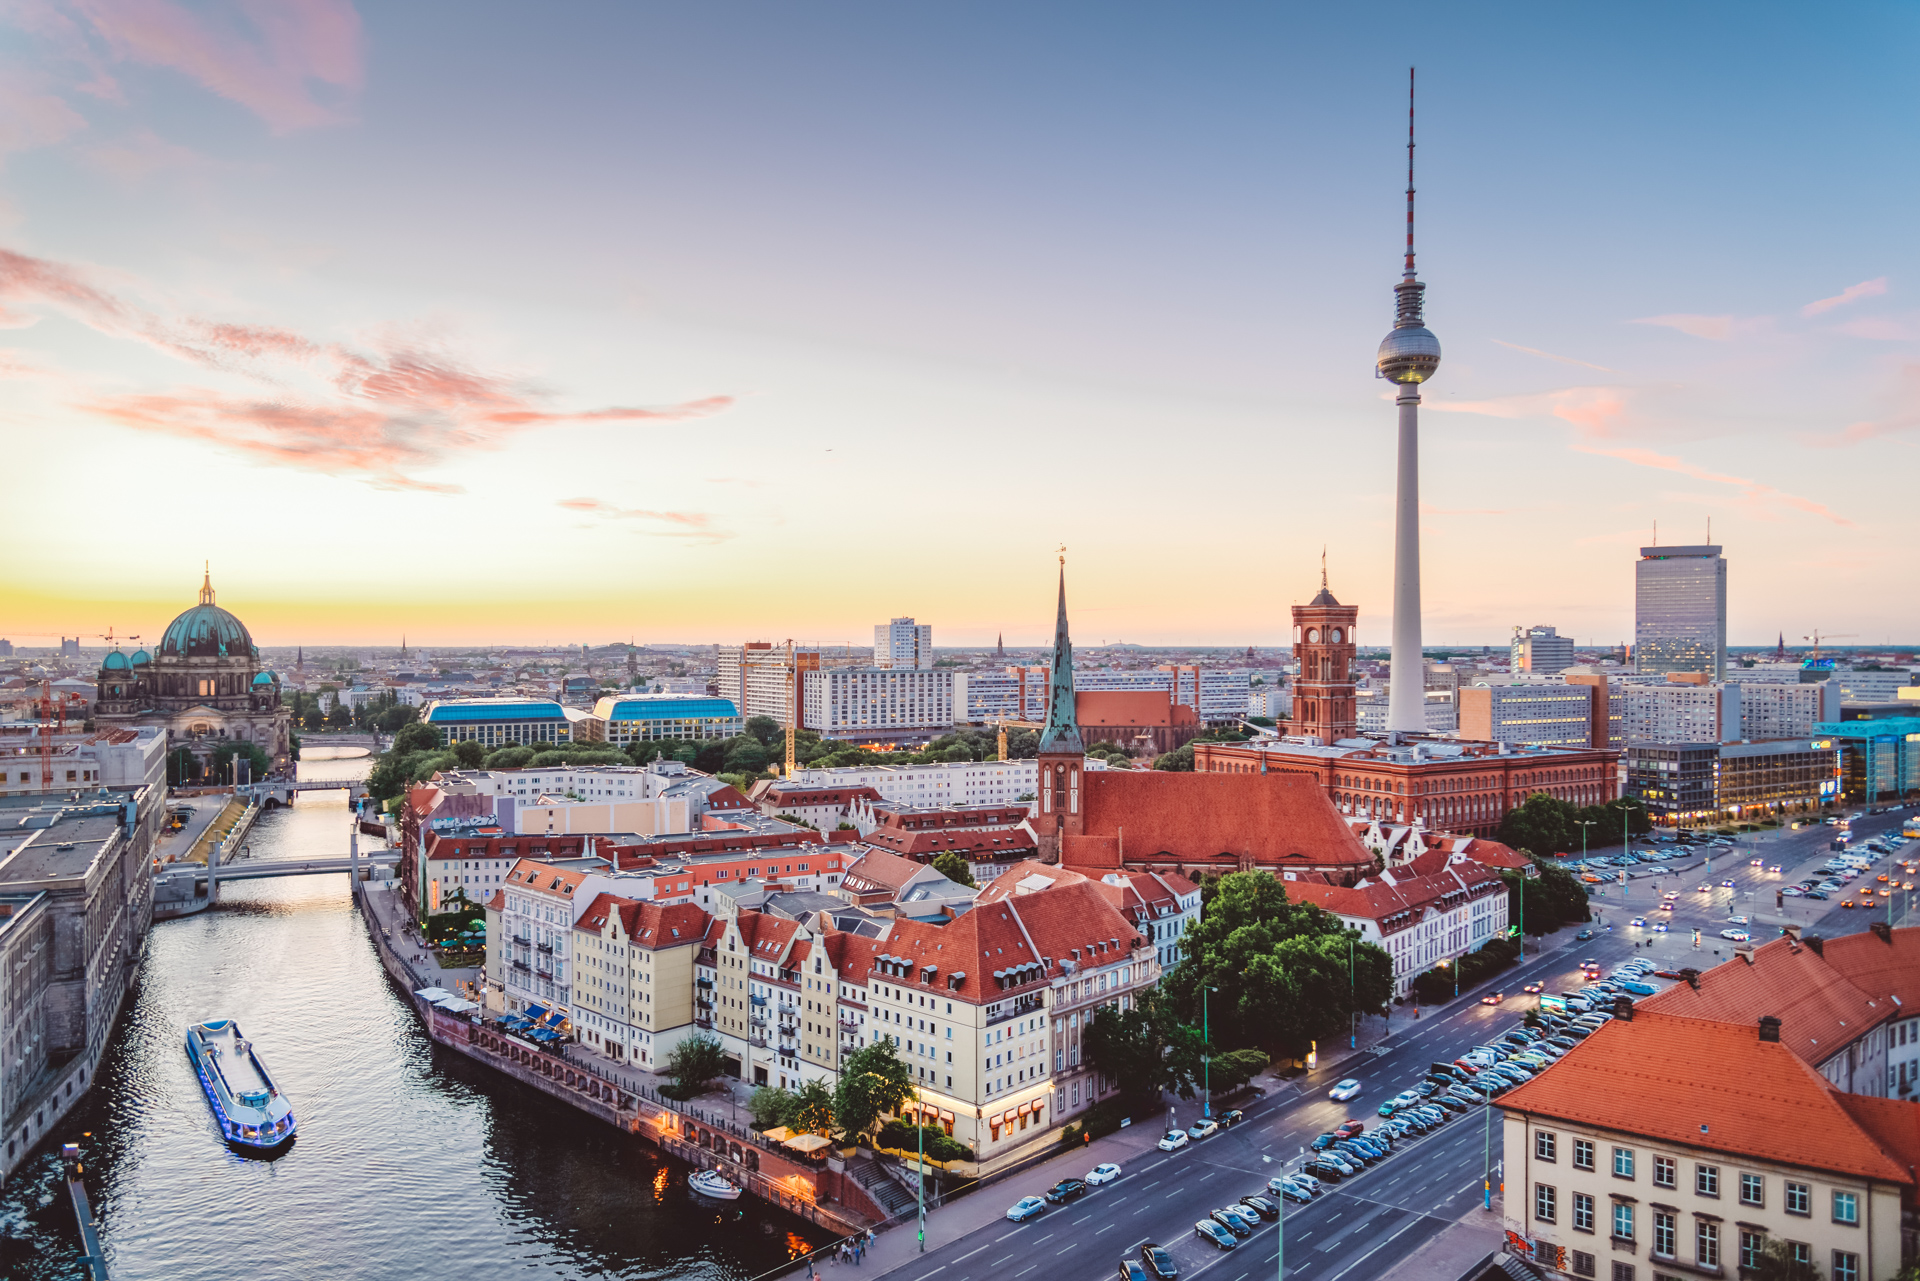 Panoramabild von Berlin, im Vordergrund die Spree, im Hintergrund der Fernsehturm. Das Bild ist in der Dämmerung aufgenommen. Nikada via Getty Images